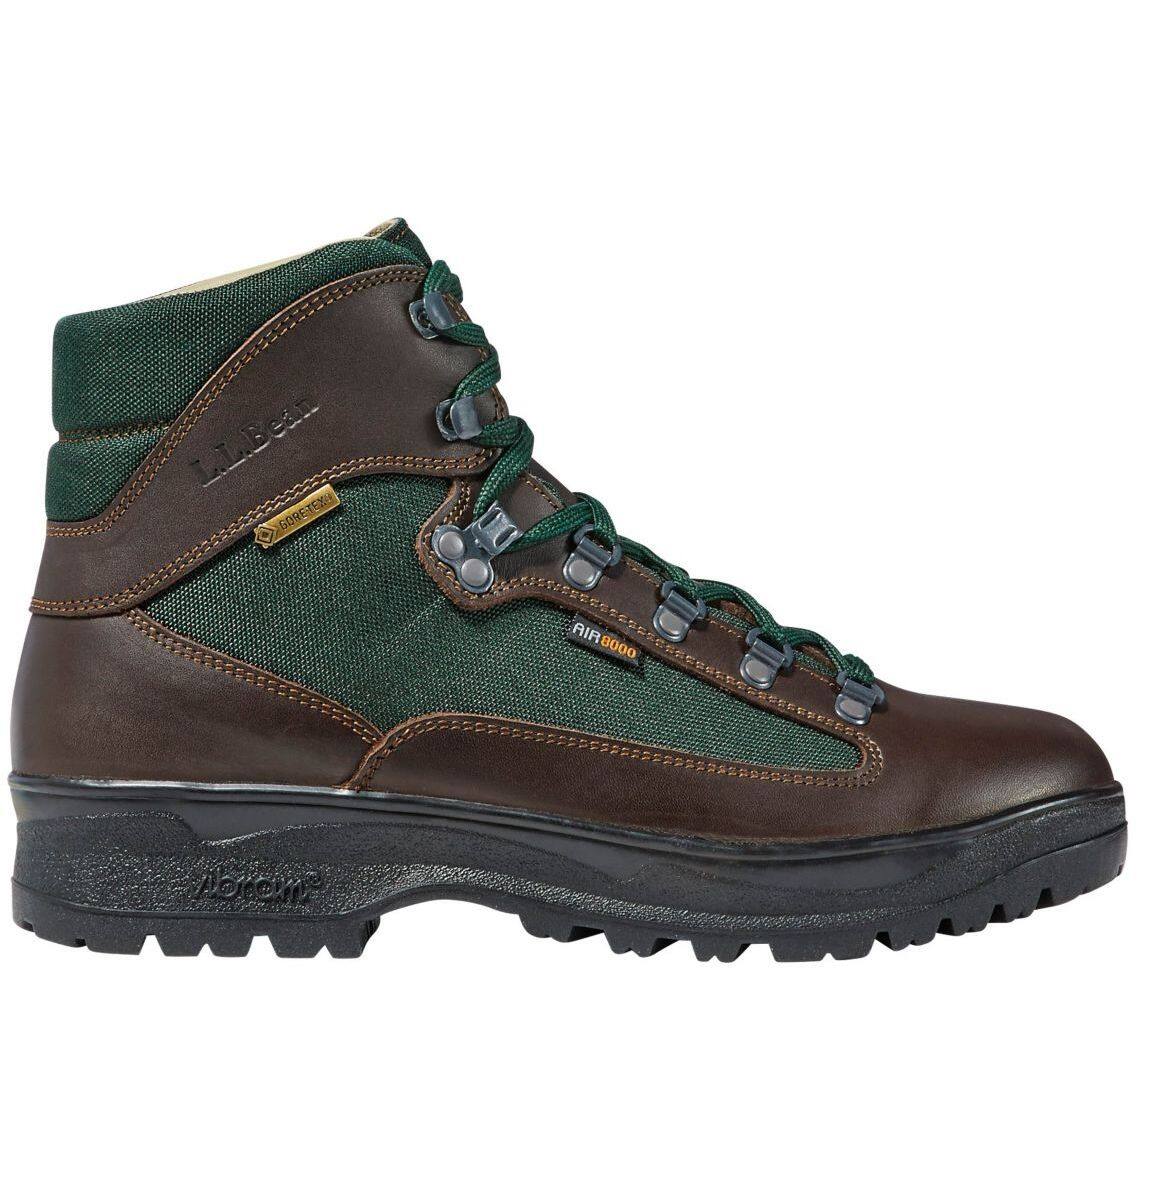 L.L.Bean Men's Gore-Tex Cresta Hiking Boots